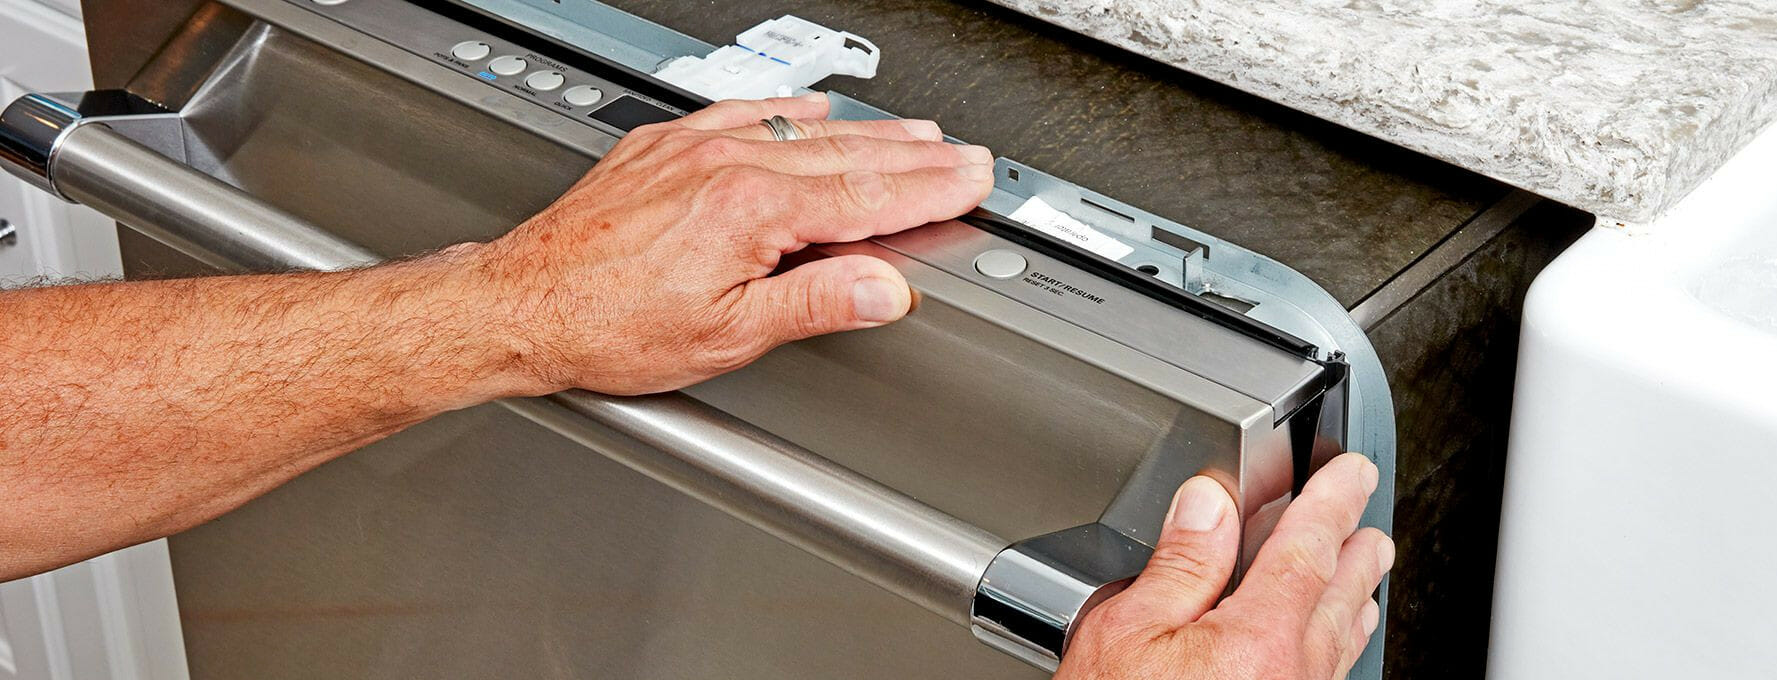 Как установить посудомоечную машину Bosch своими руками